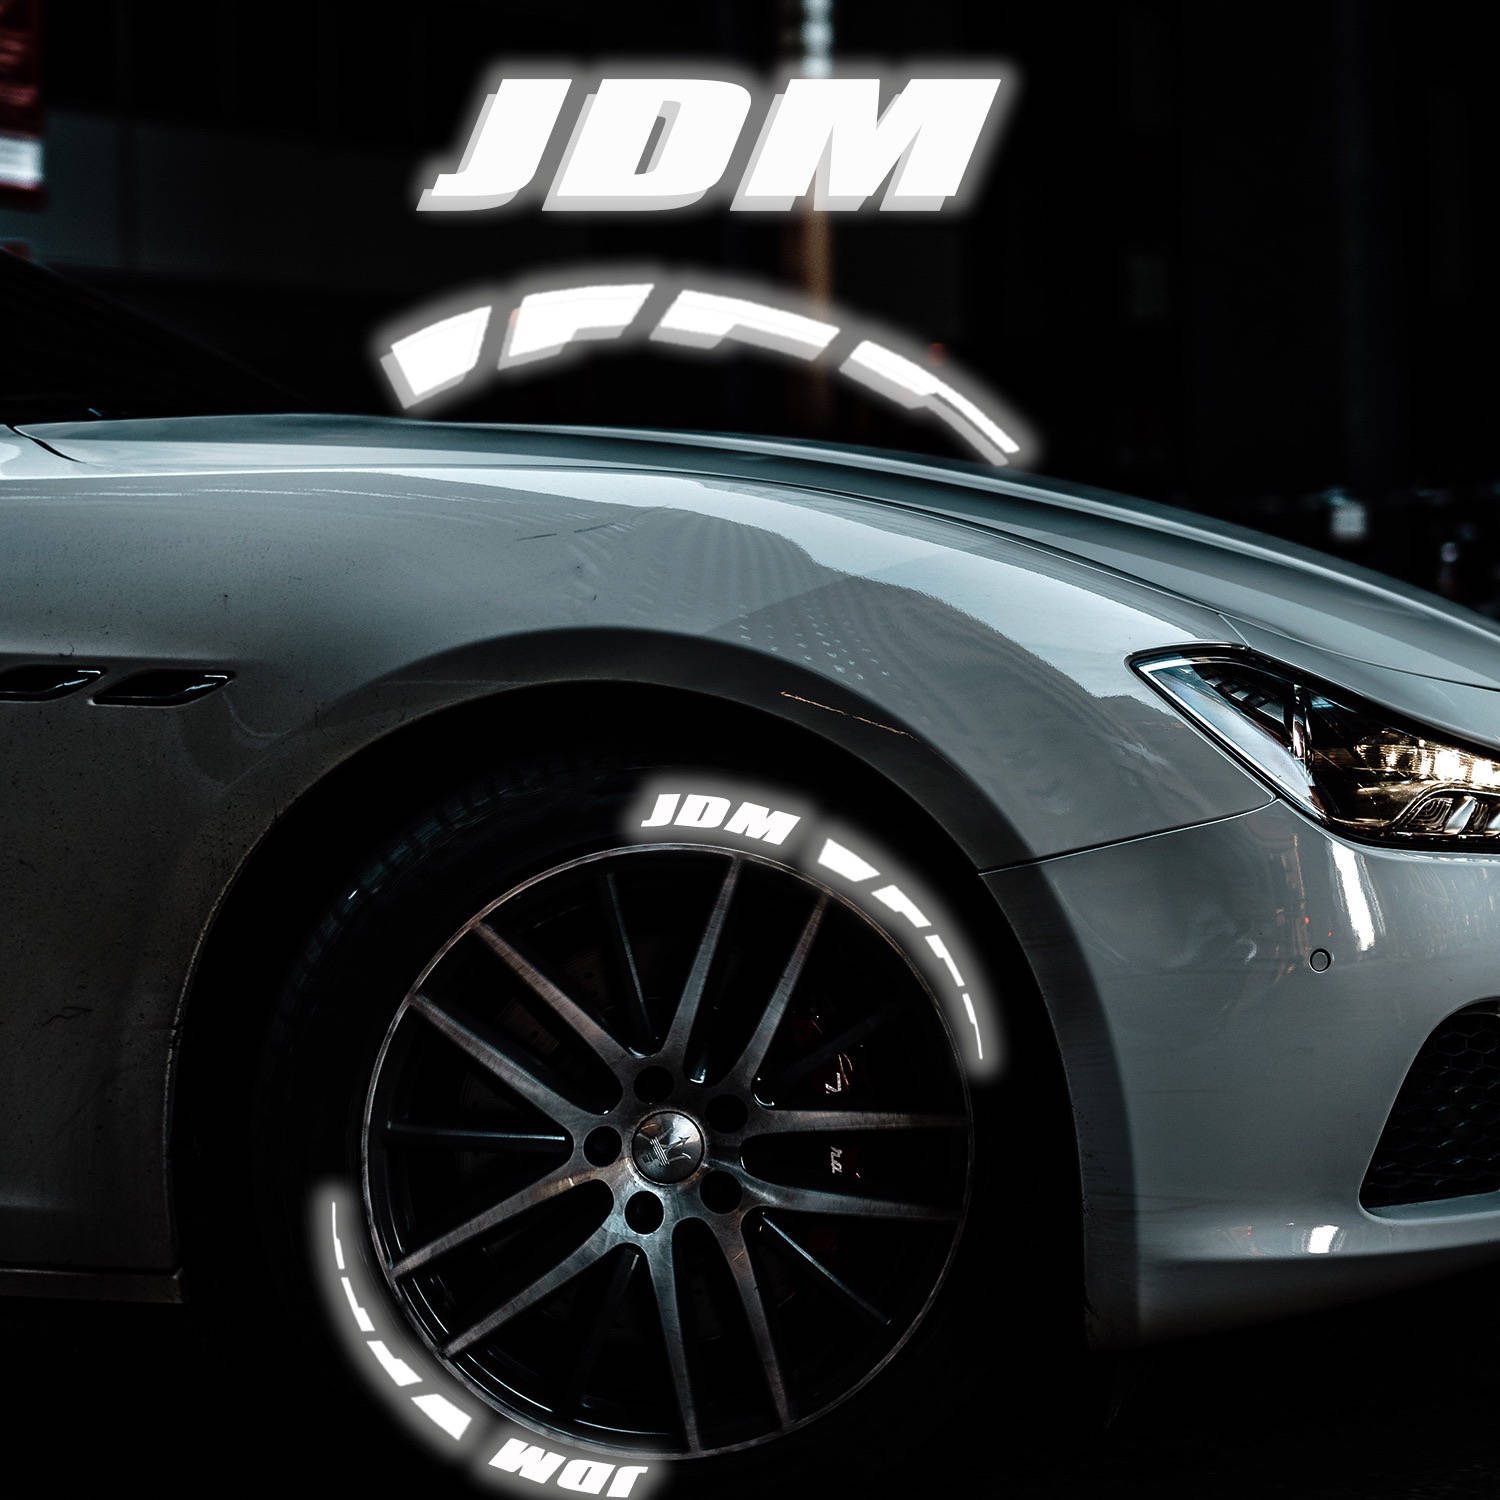 Decoração Refletiva para pneus com a palavra jdm para fãs de carros japoneses, autocolante para colocar na roda do automóvel